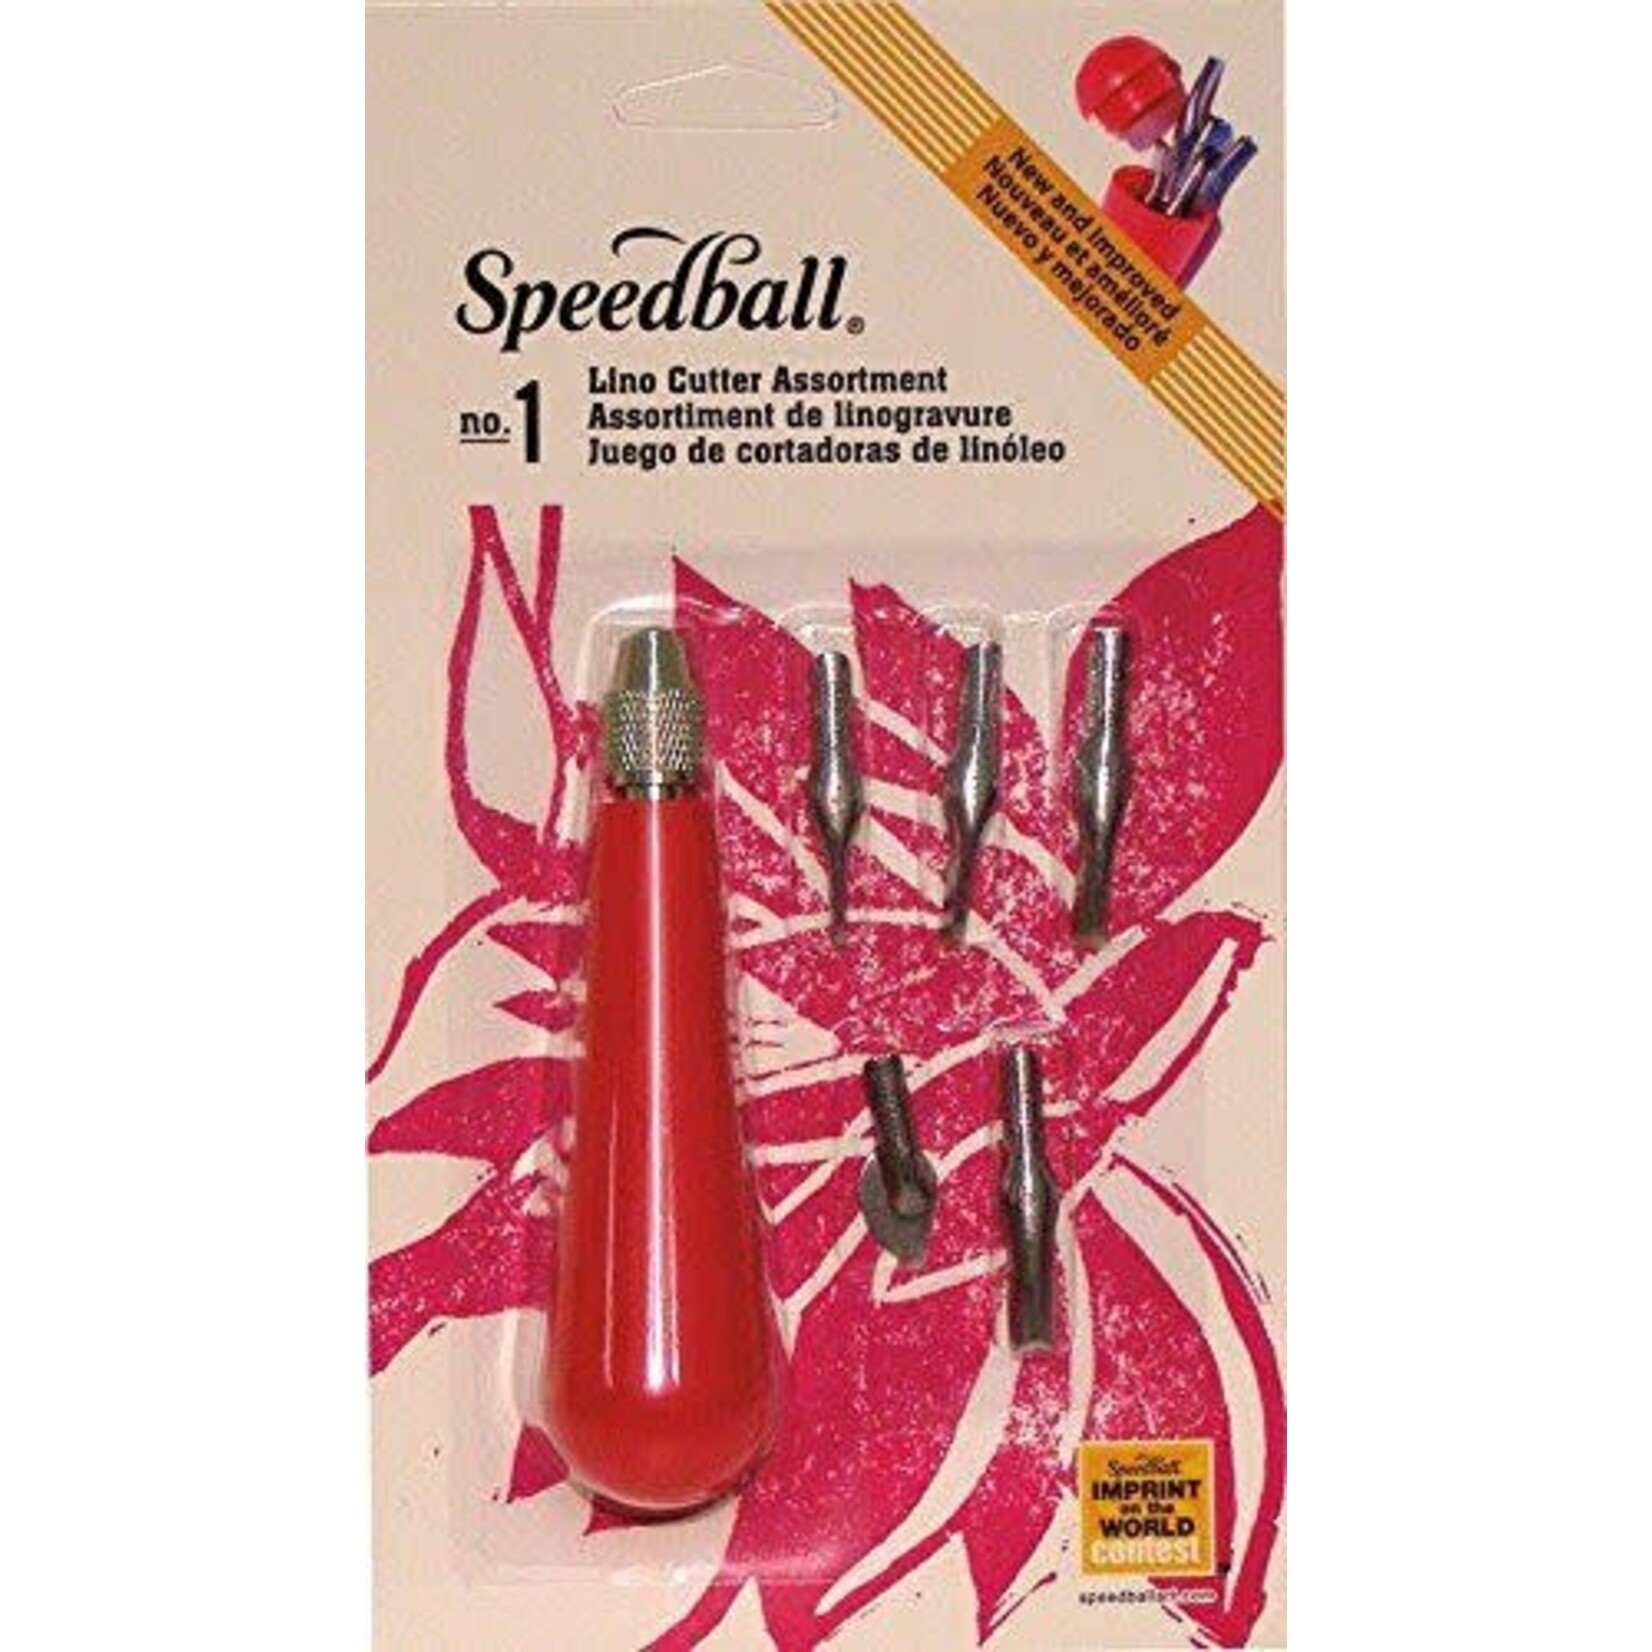 Speedball Lino Cutter #1  Assortment Carded